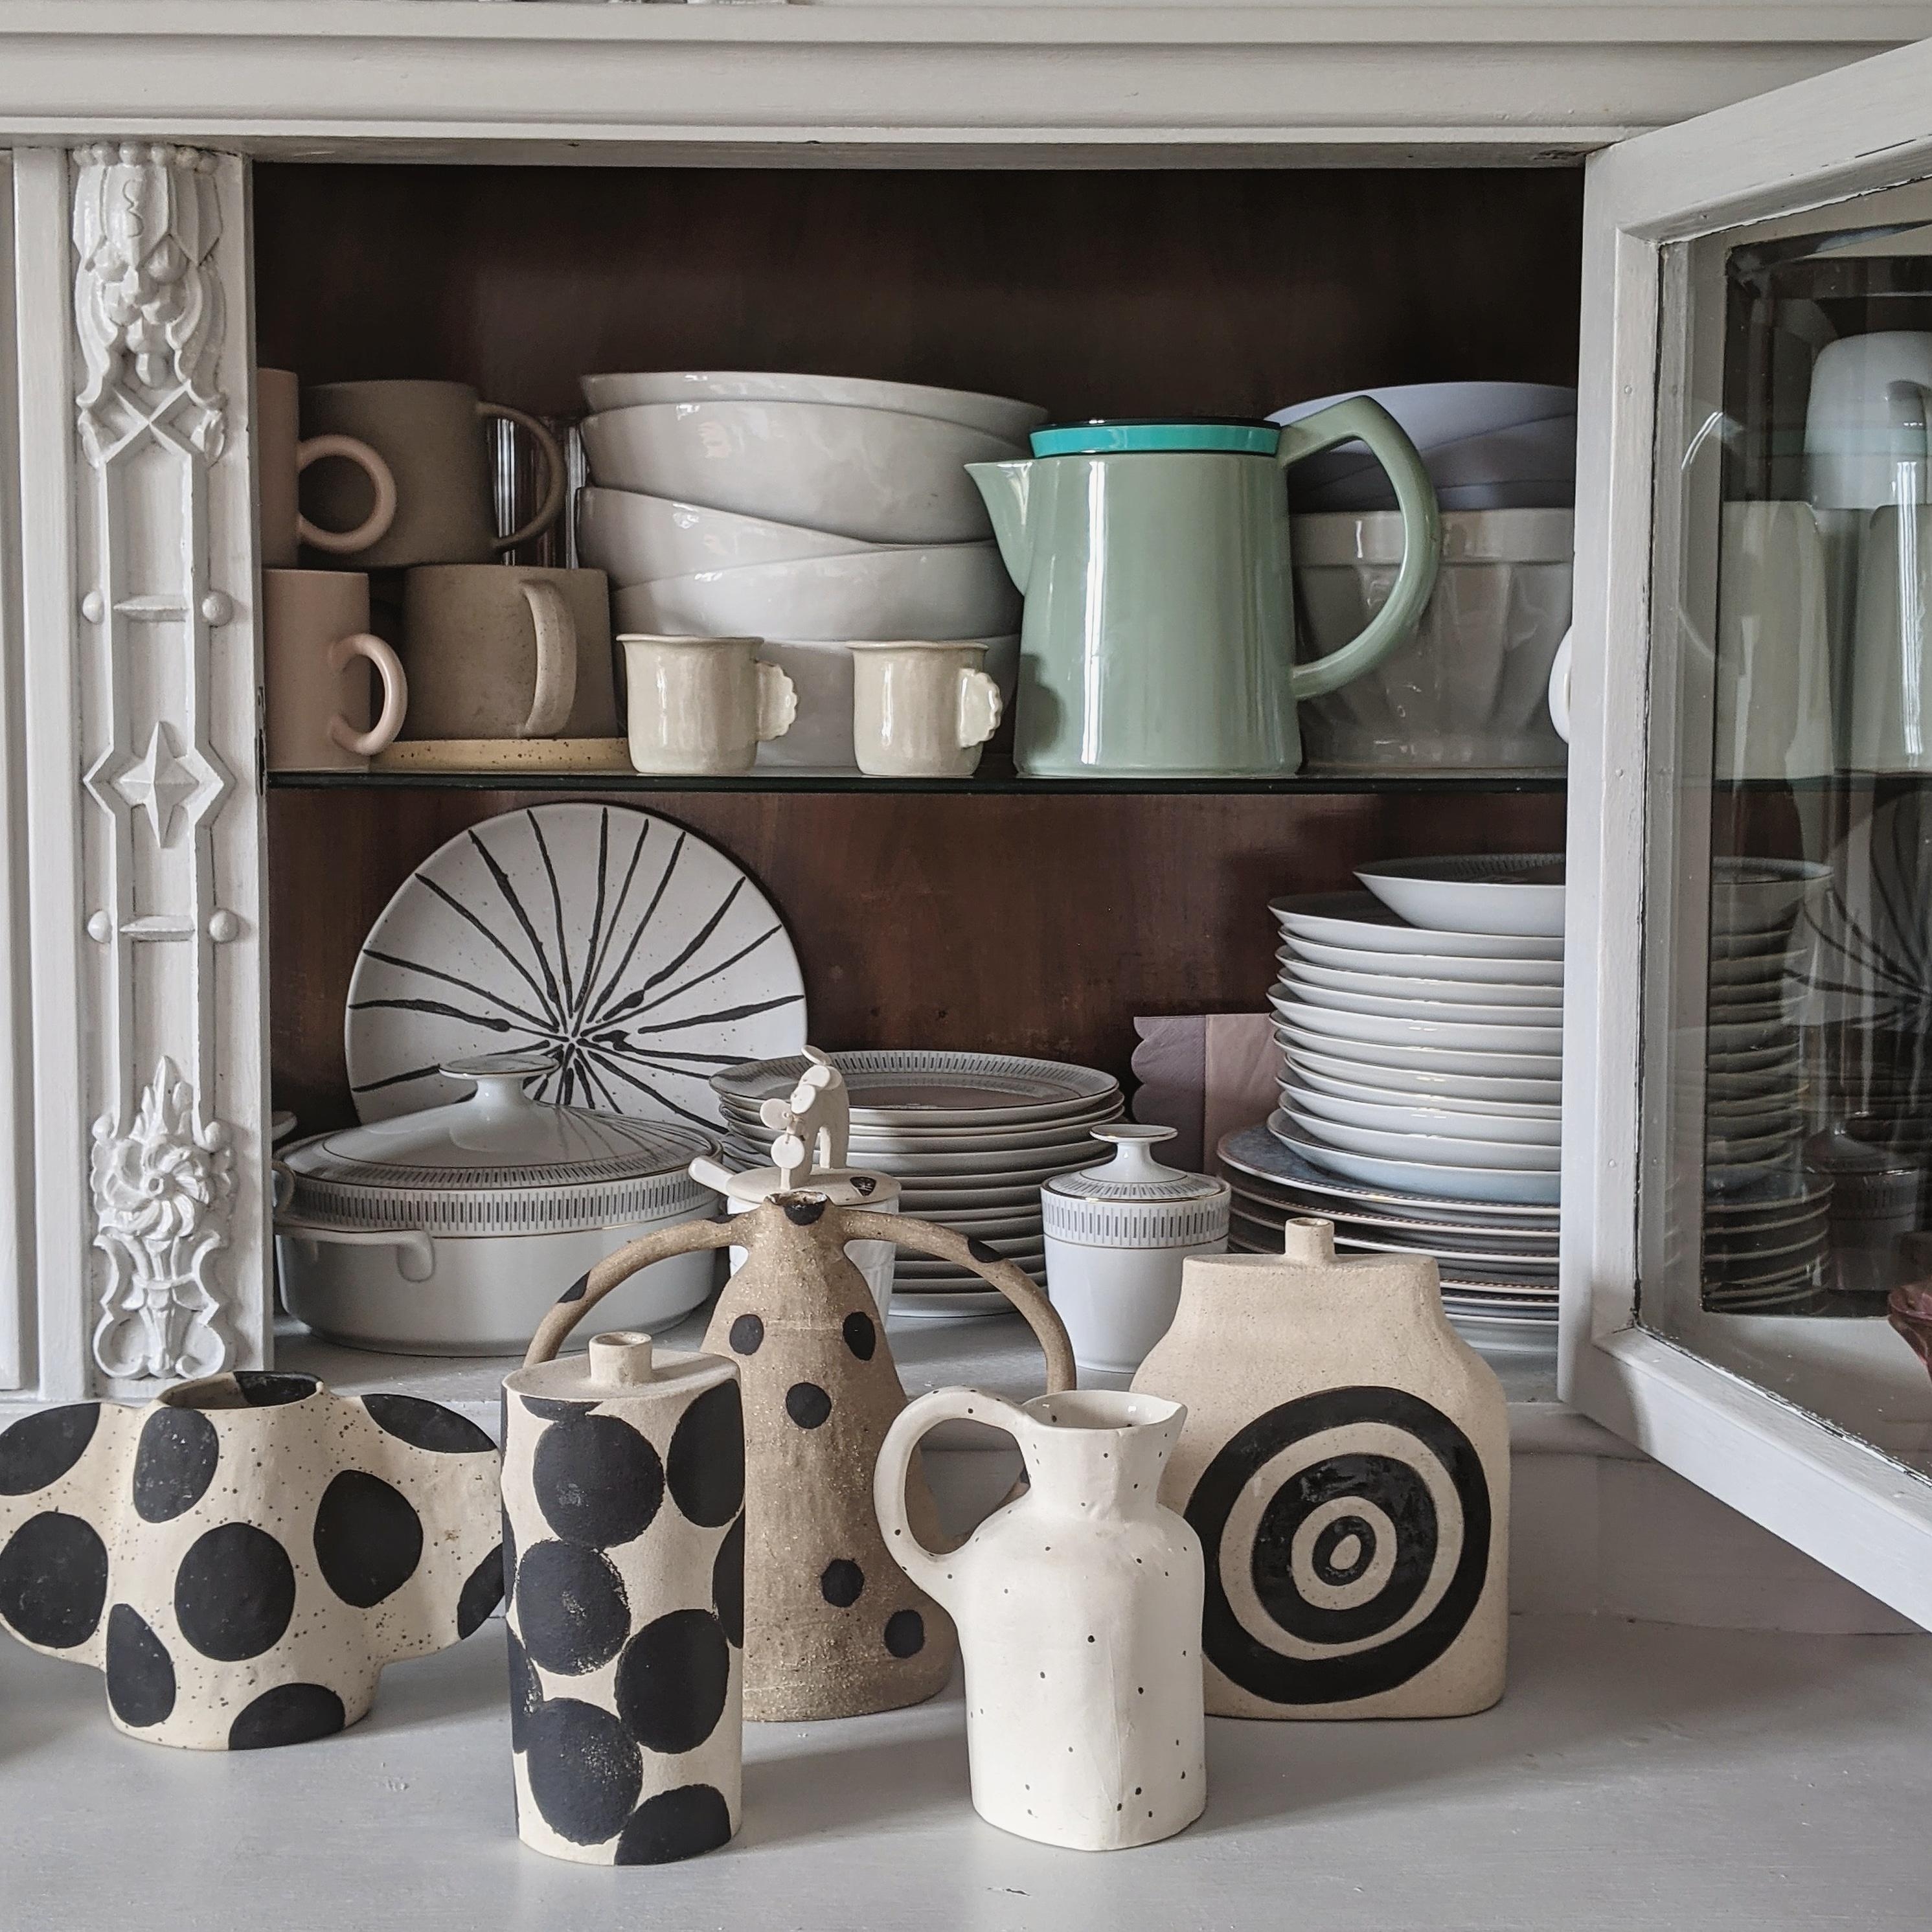 #keramik#buffet#altbau#vintage#vasen#handmade#kunst#scandinavisch#couchstyle#livibg#interior